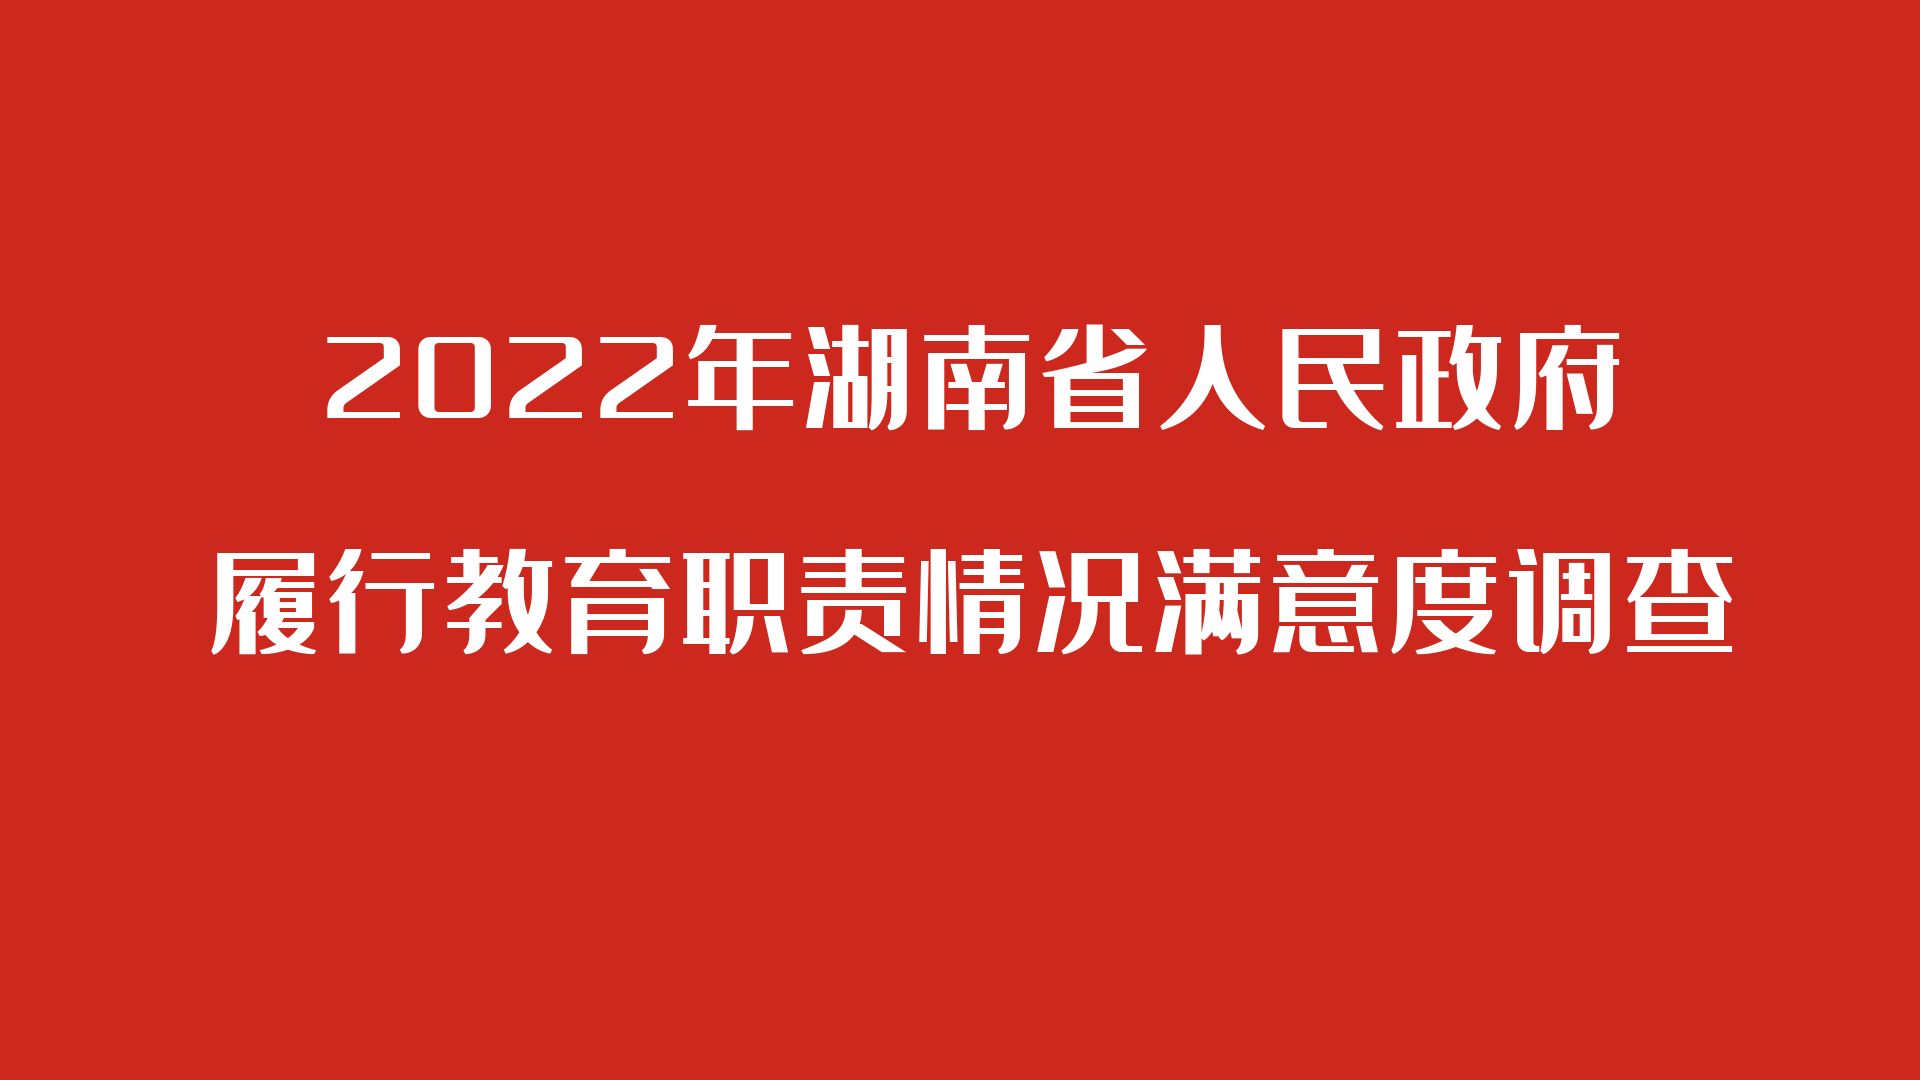 关于参与2022年湖南省人民政府履行教育职责情况满意度调查的公告